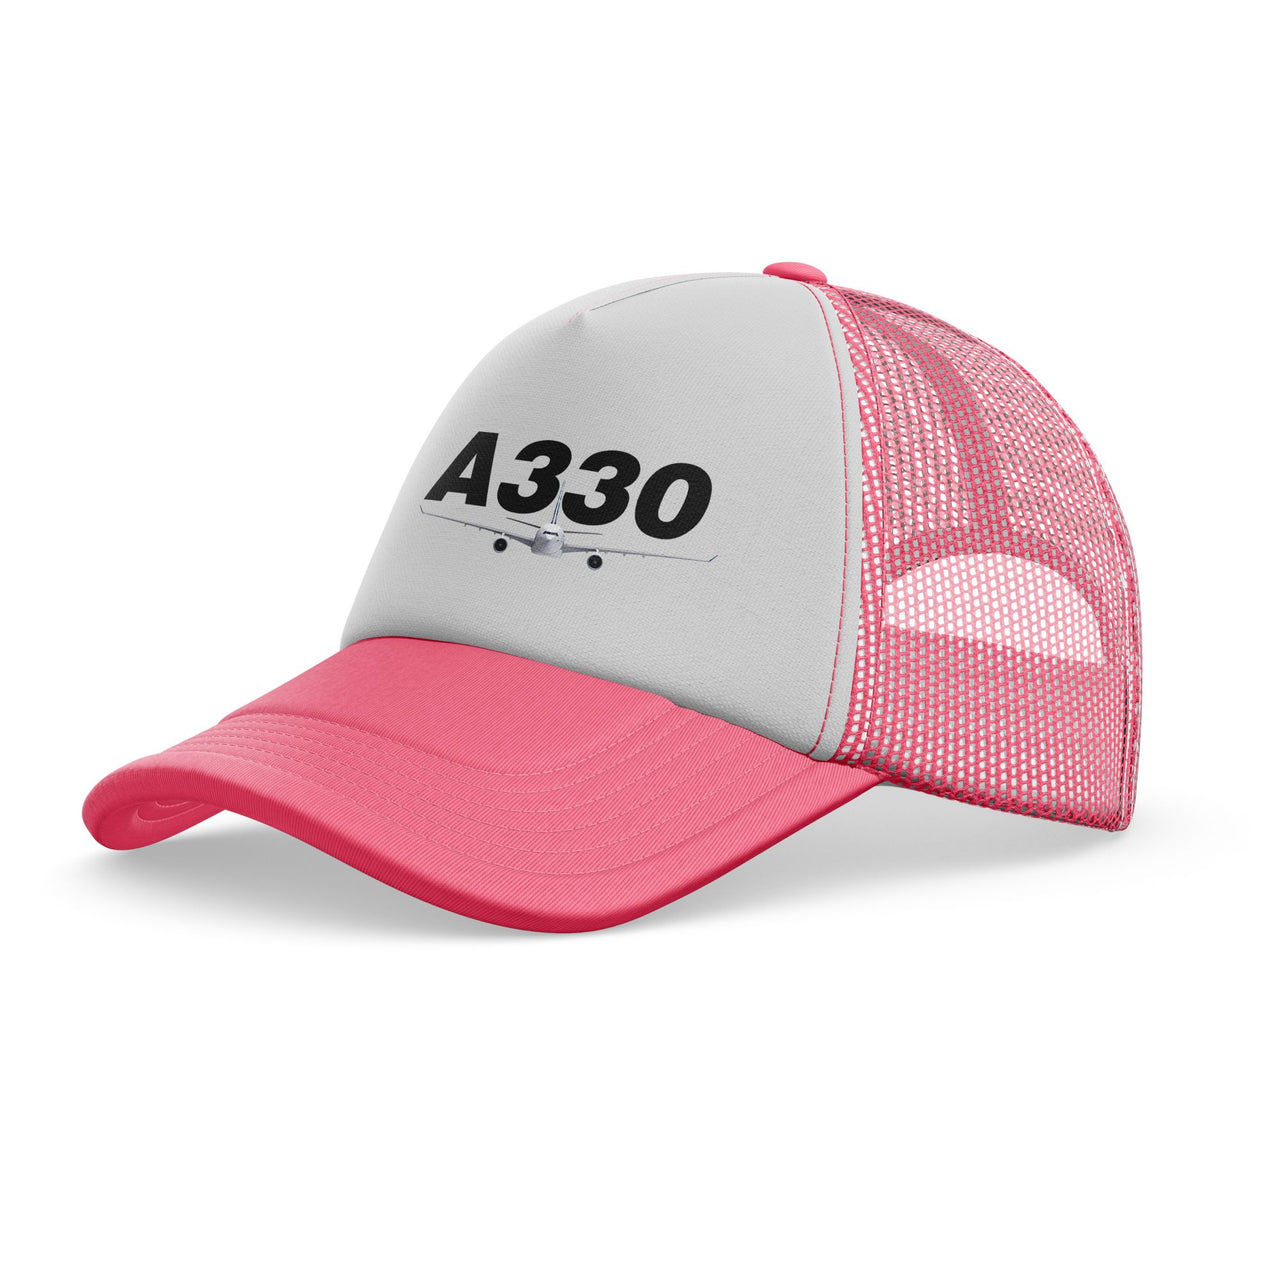 Super Airbus A330 Designed Trucker Caps & Hats